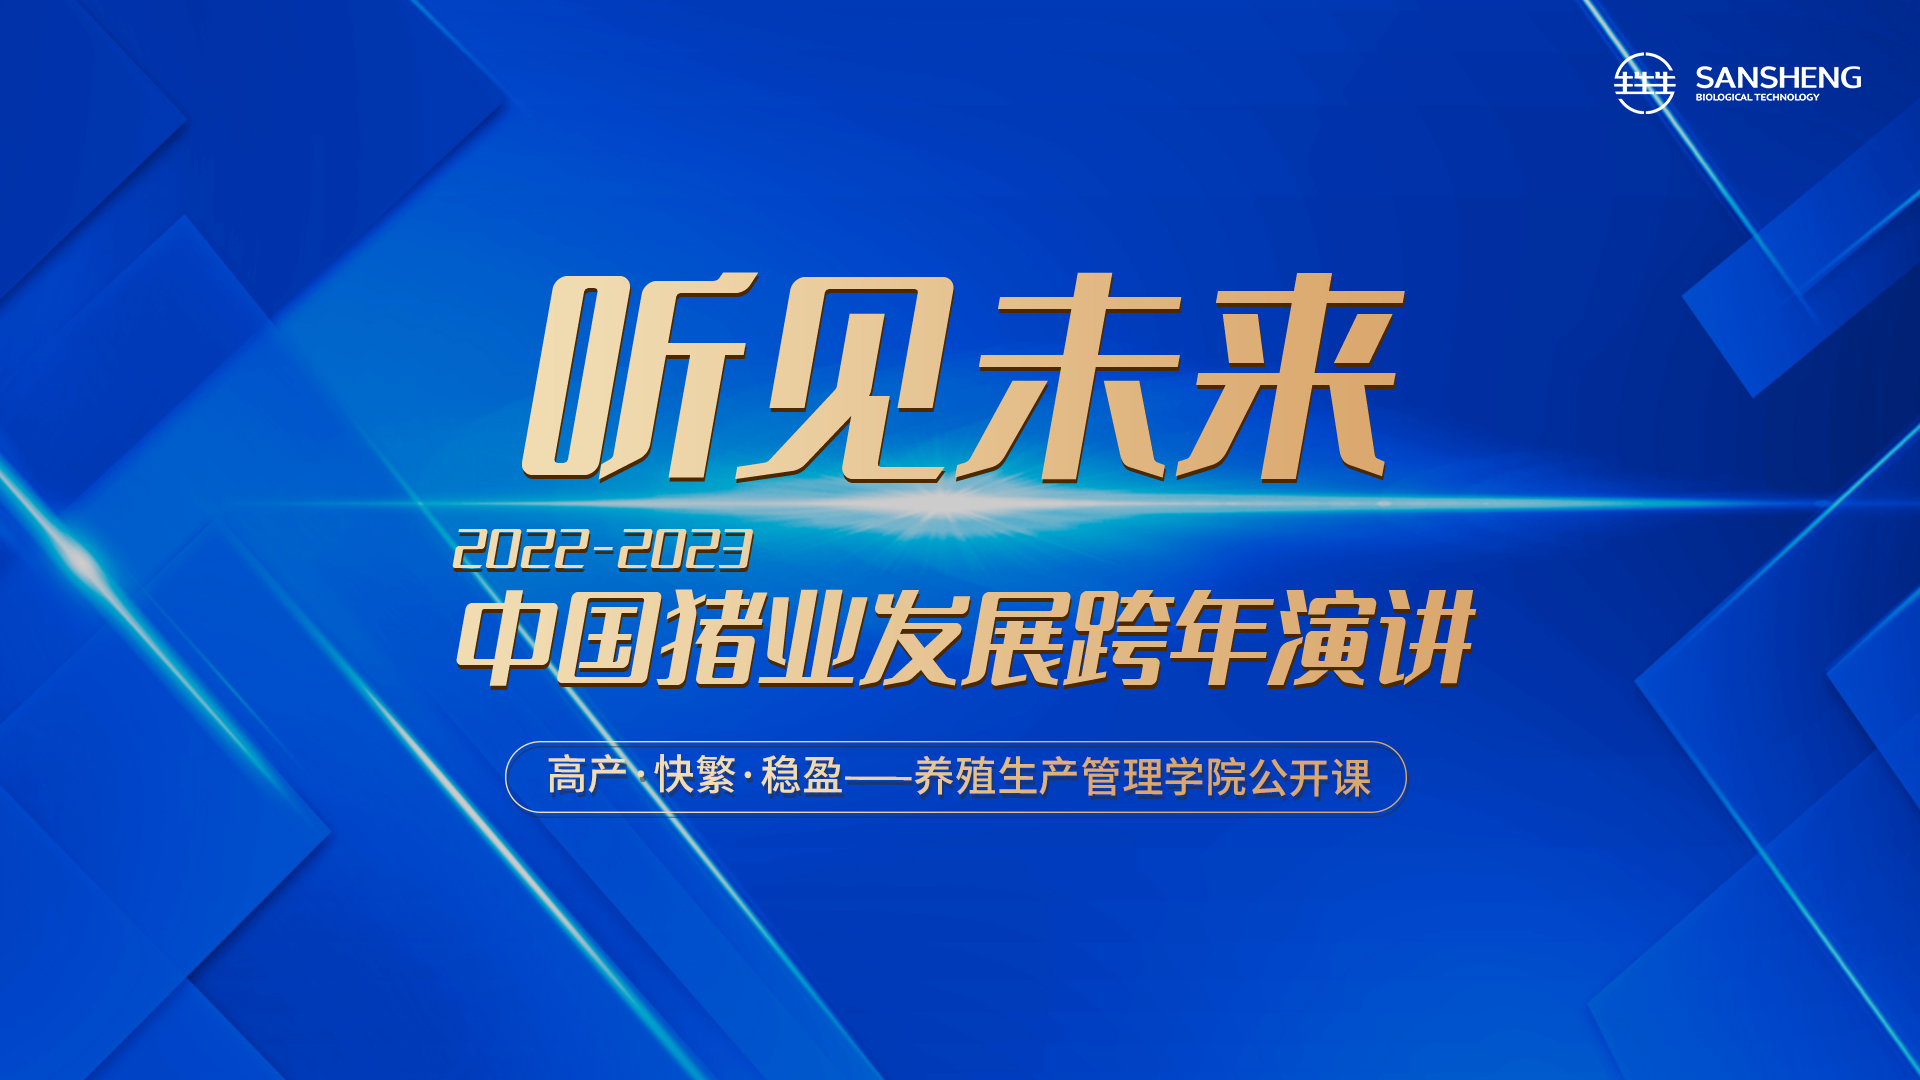 宁波三生《听见未来·2022-2023中国猪业发展跨年演讲》线上直播会议圆满落幕！都有哪些亮点？